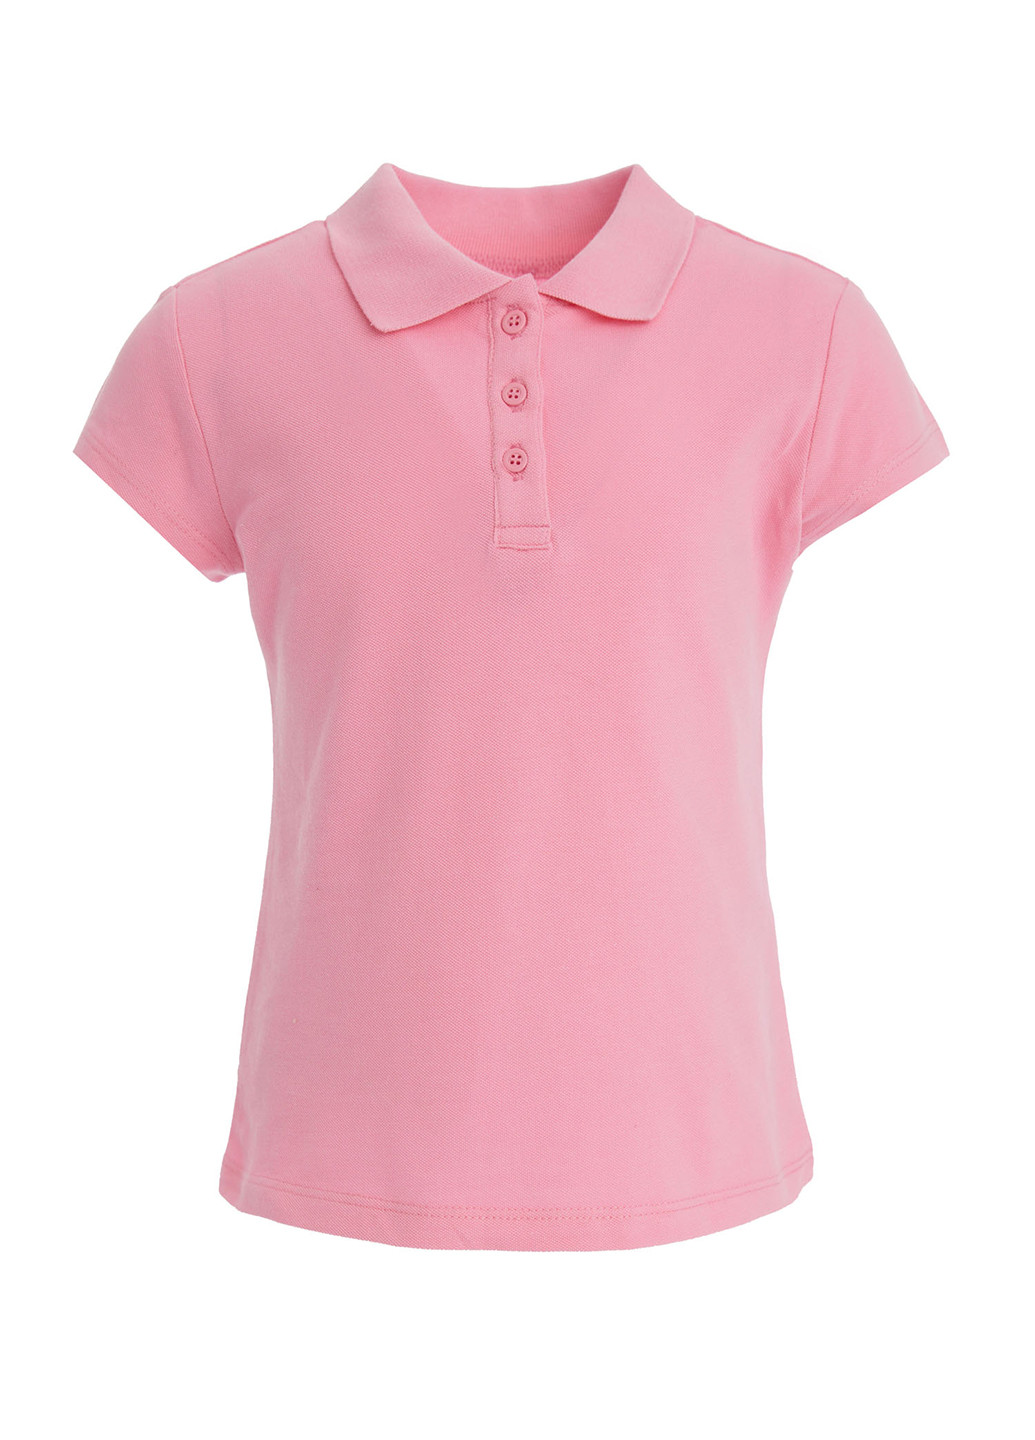 Светло-розовая детская футболка-поло для девочки DeFacto однотонная